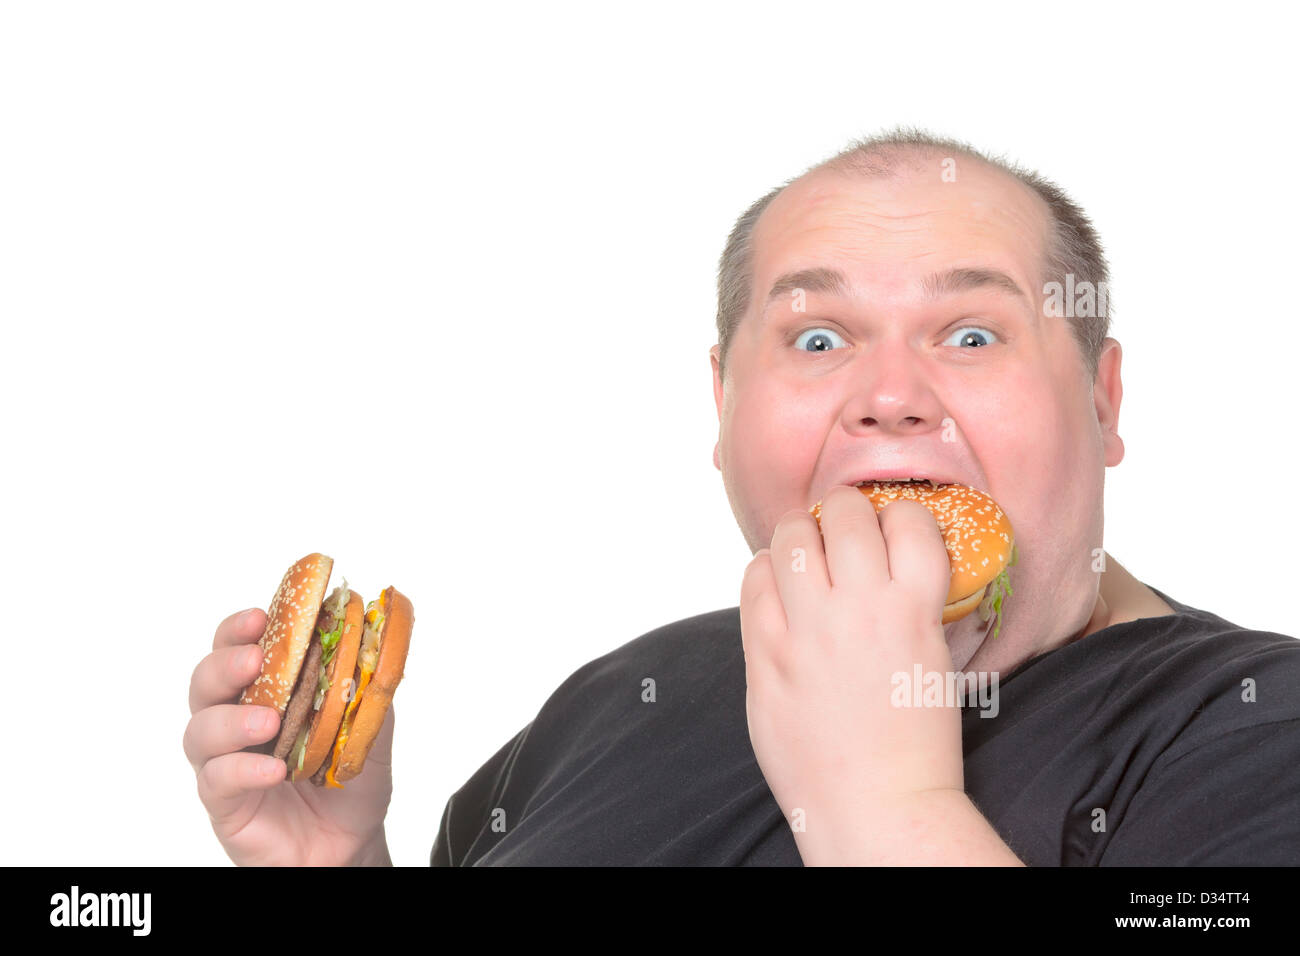 Fat Man Greedily Eating Hamburger, on white background Stock Photo - Alamy